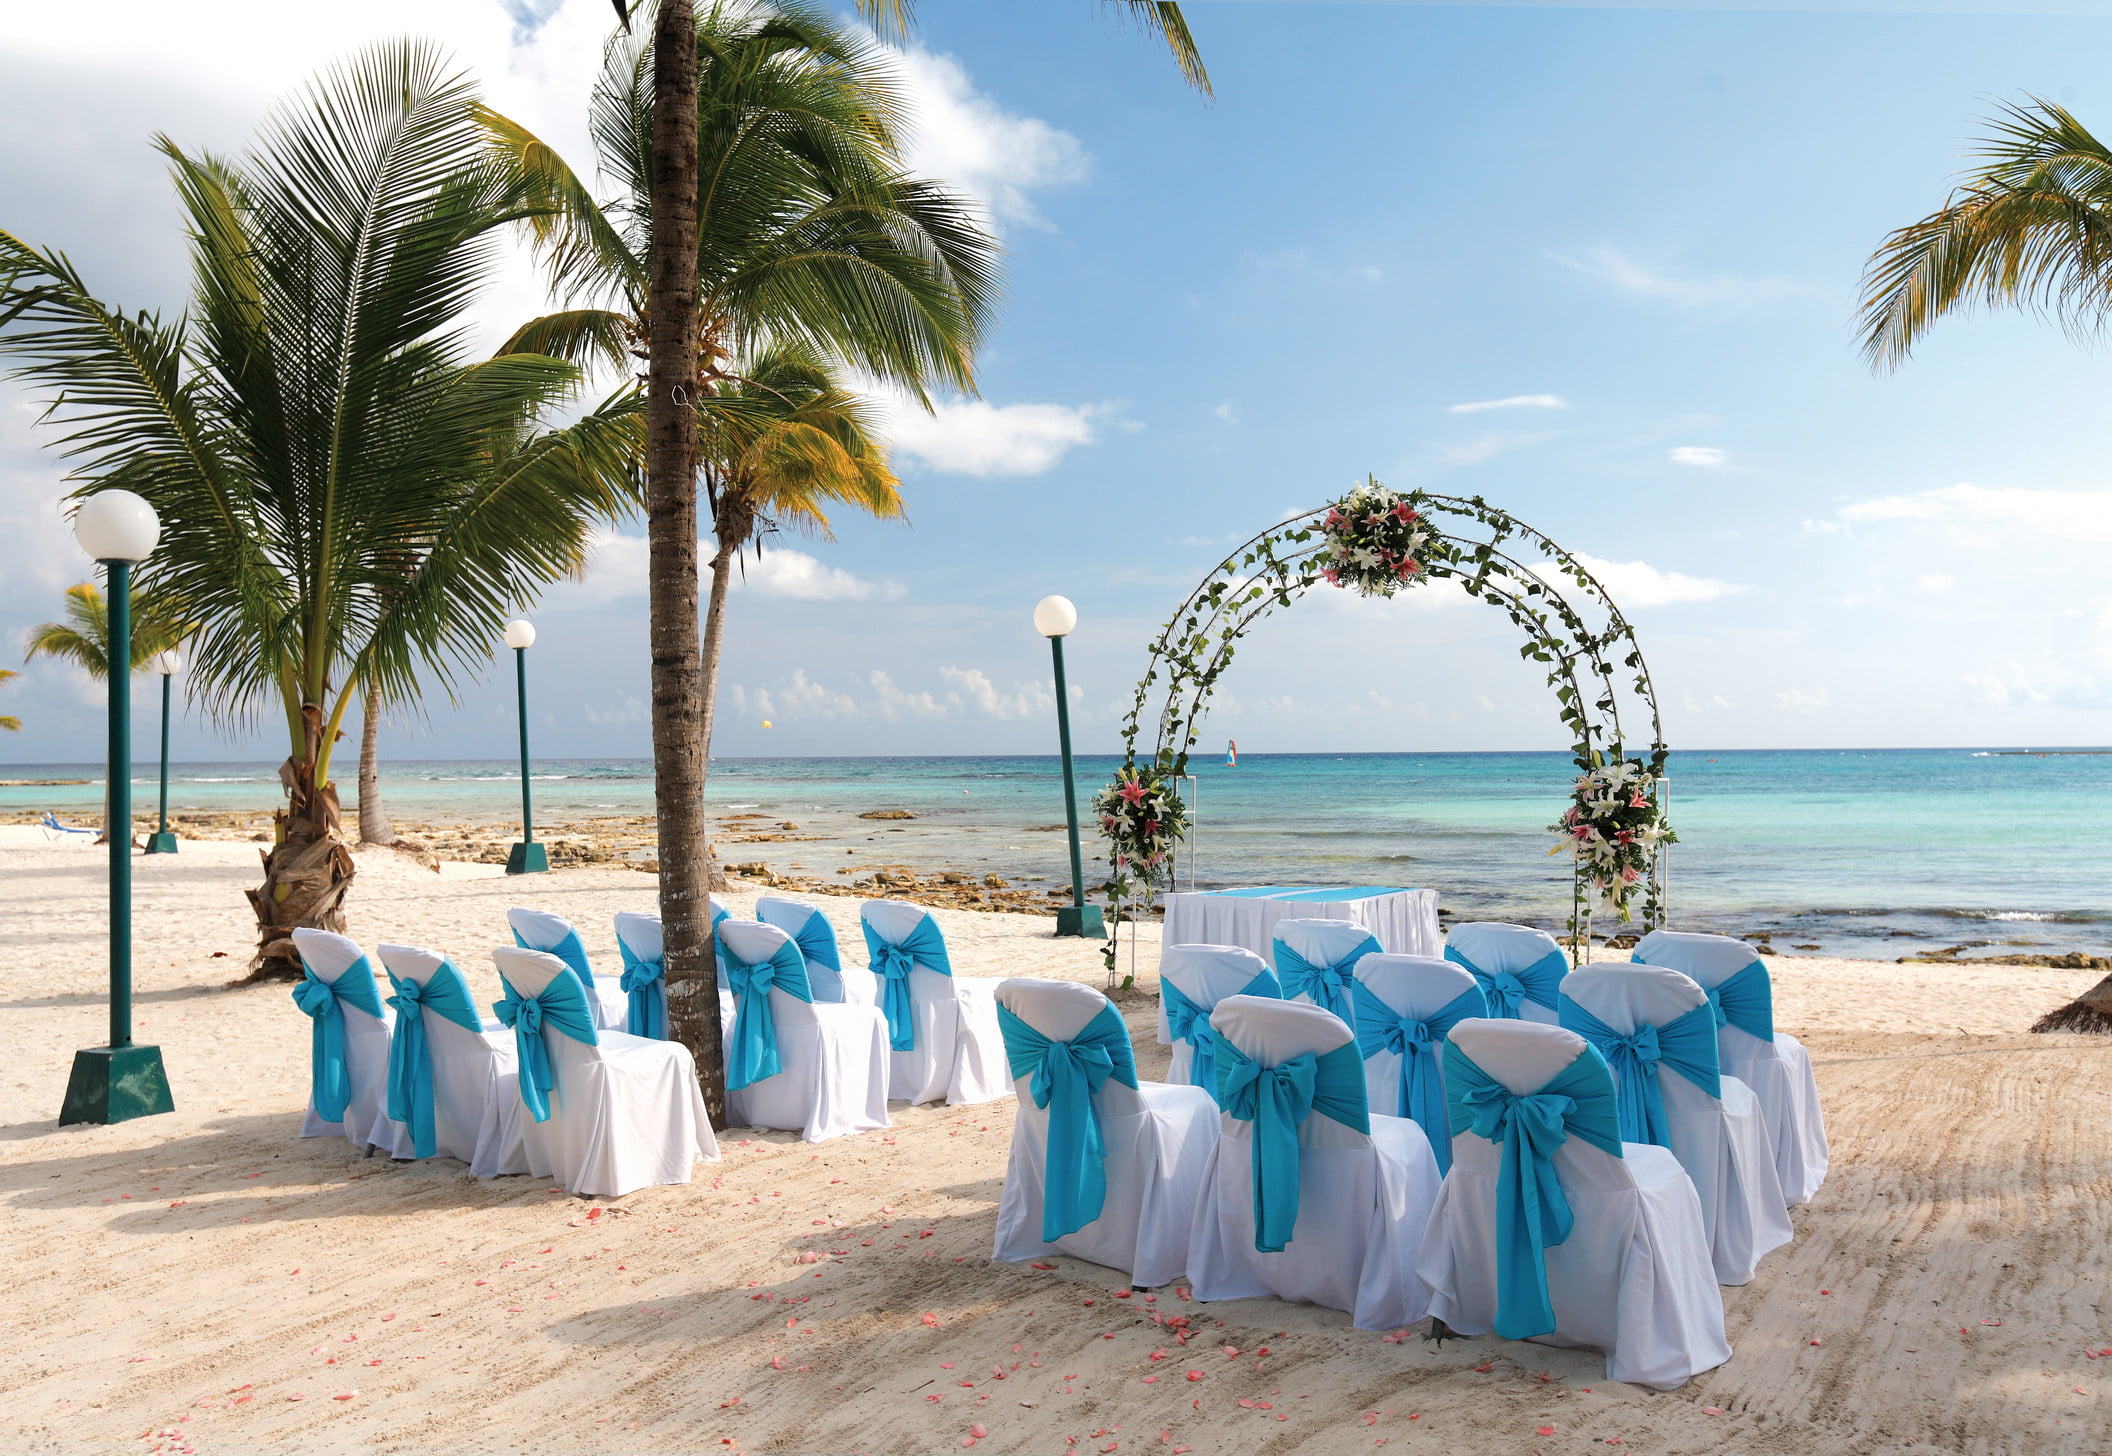 Barcelo Maya Beach destination wedding